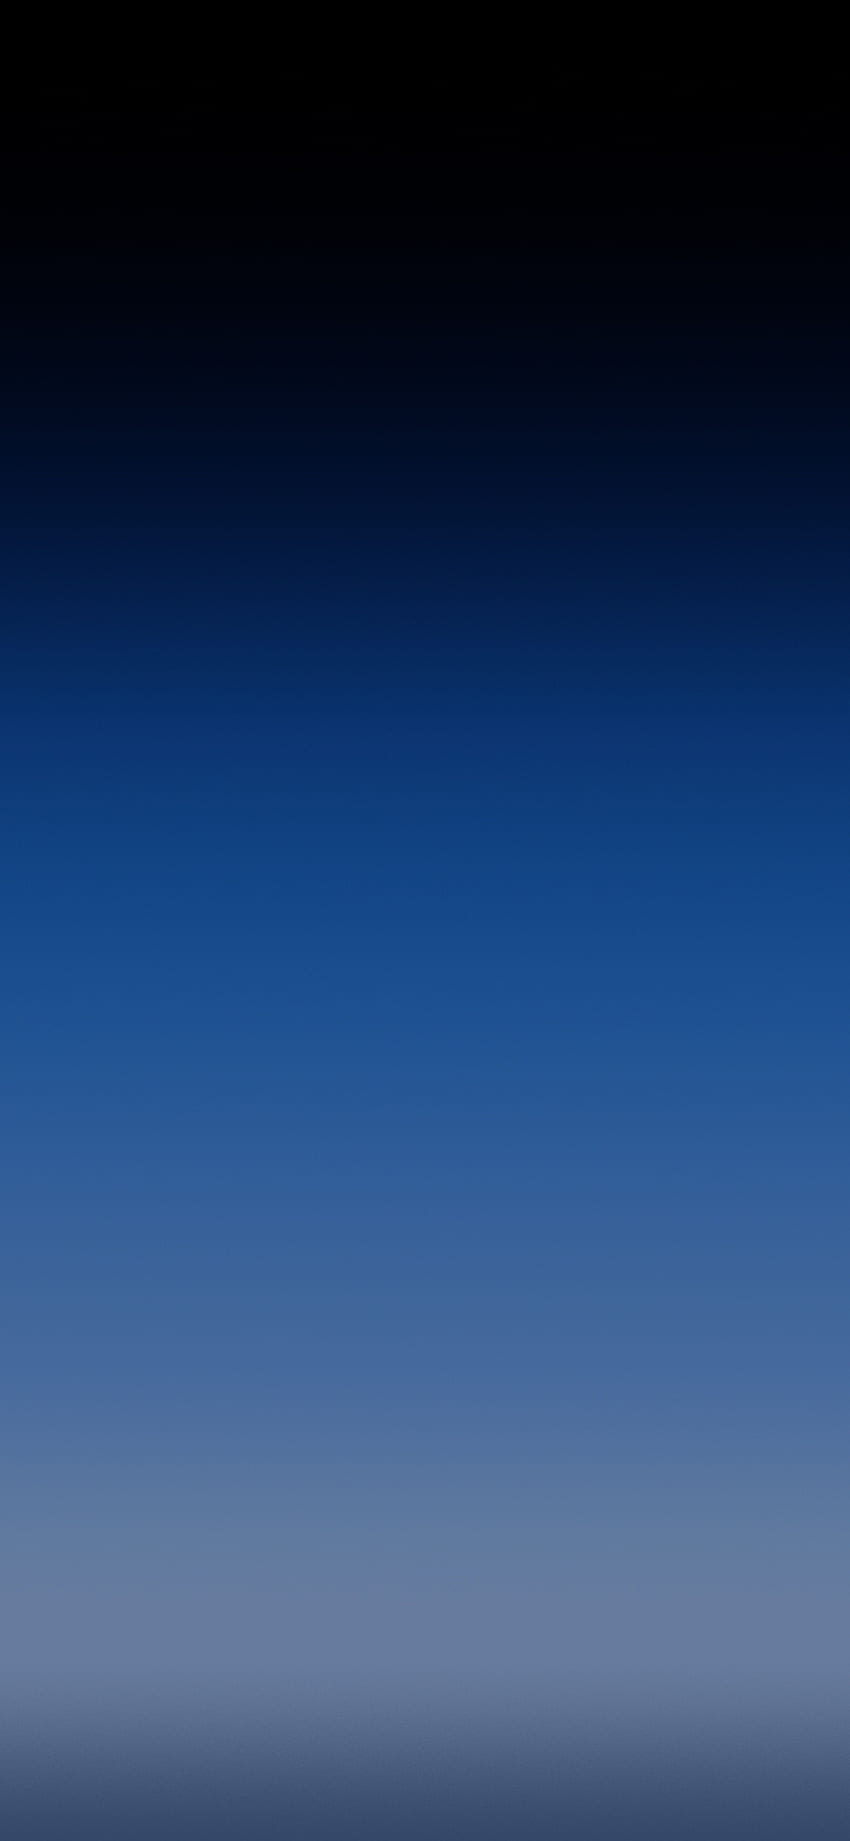 Danielghuffman Light 3,375×7,308 ピクセルによる最小限のグラデーション IPhone X。 ブルー Iphone、オンブル Iphone、IPhone、黒と白のグラデーション HD電話の壁紙